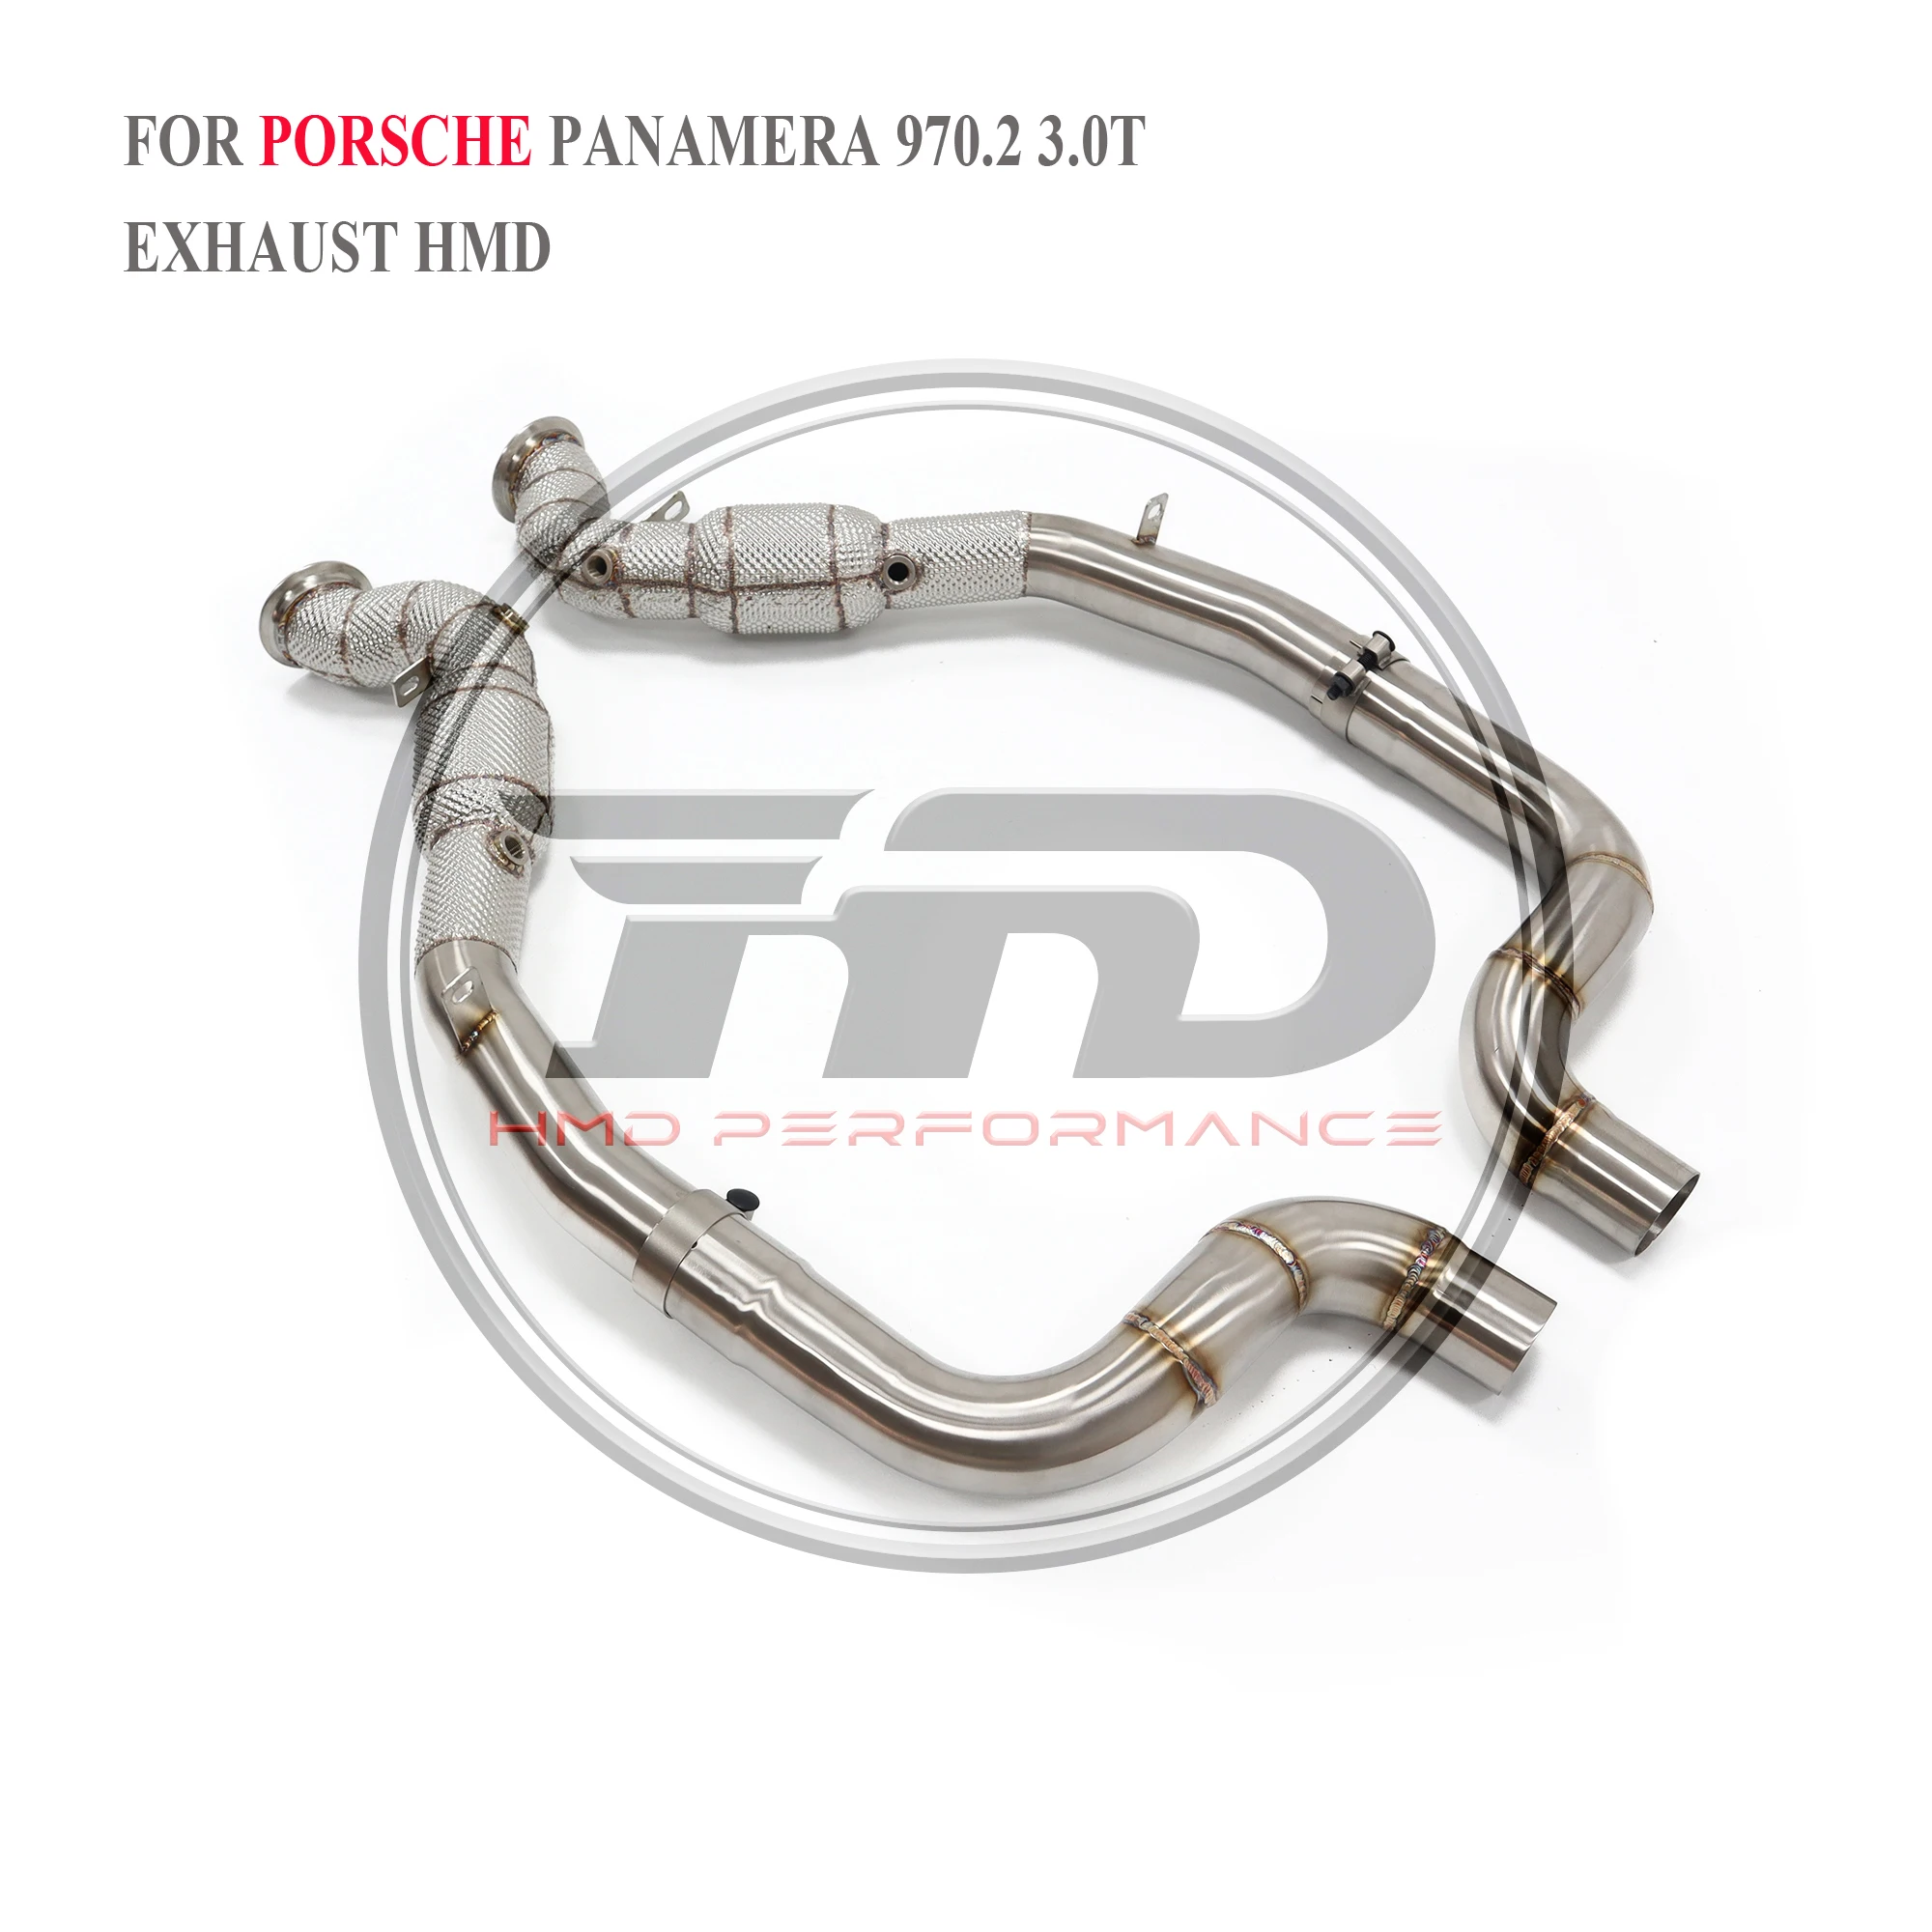 

HMD автомобильные аксессуары, выхлопная система, высокая производительность потока, выпускная труба для Porsche Panamera 970,2 3,0 T с каталитическим